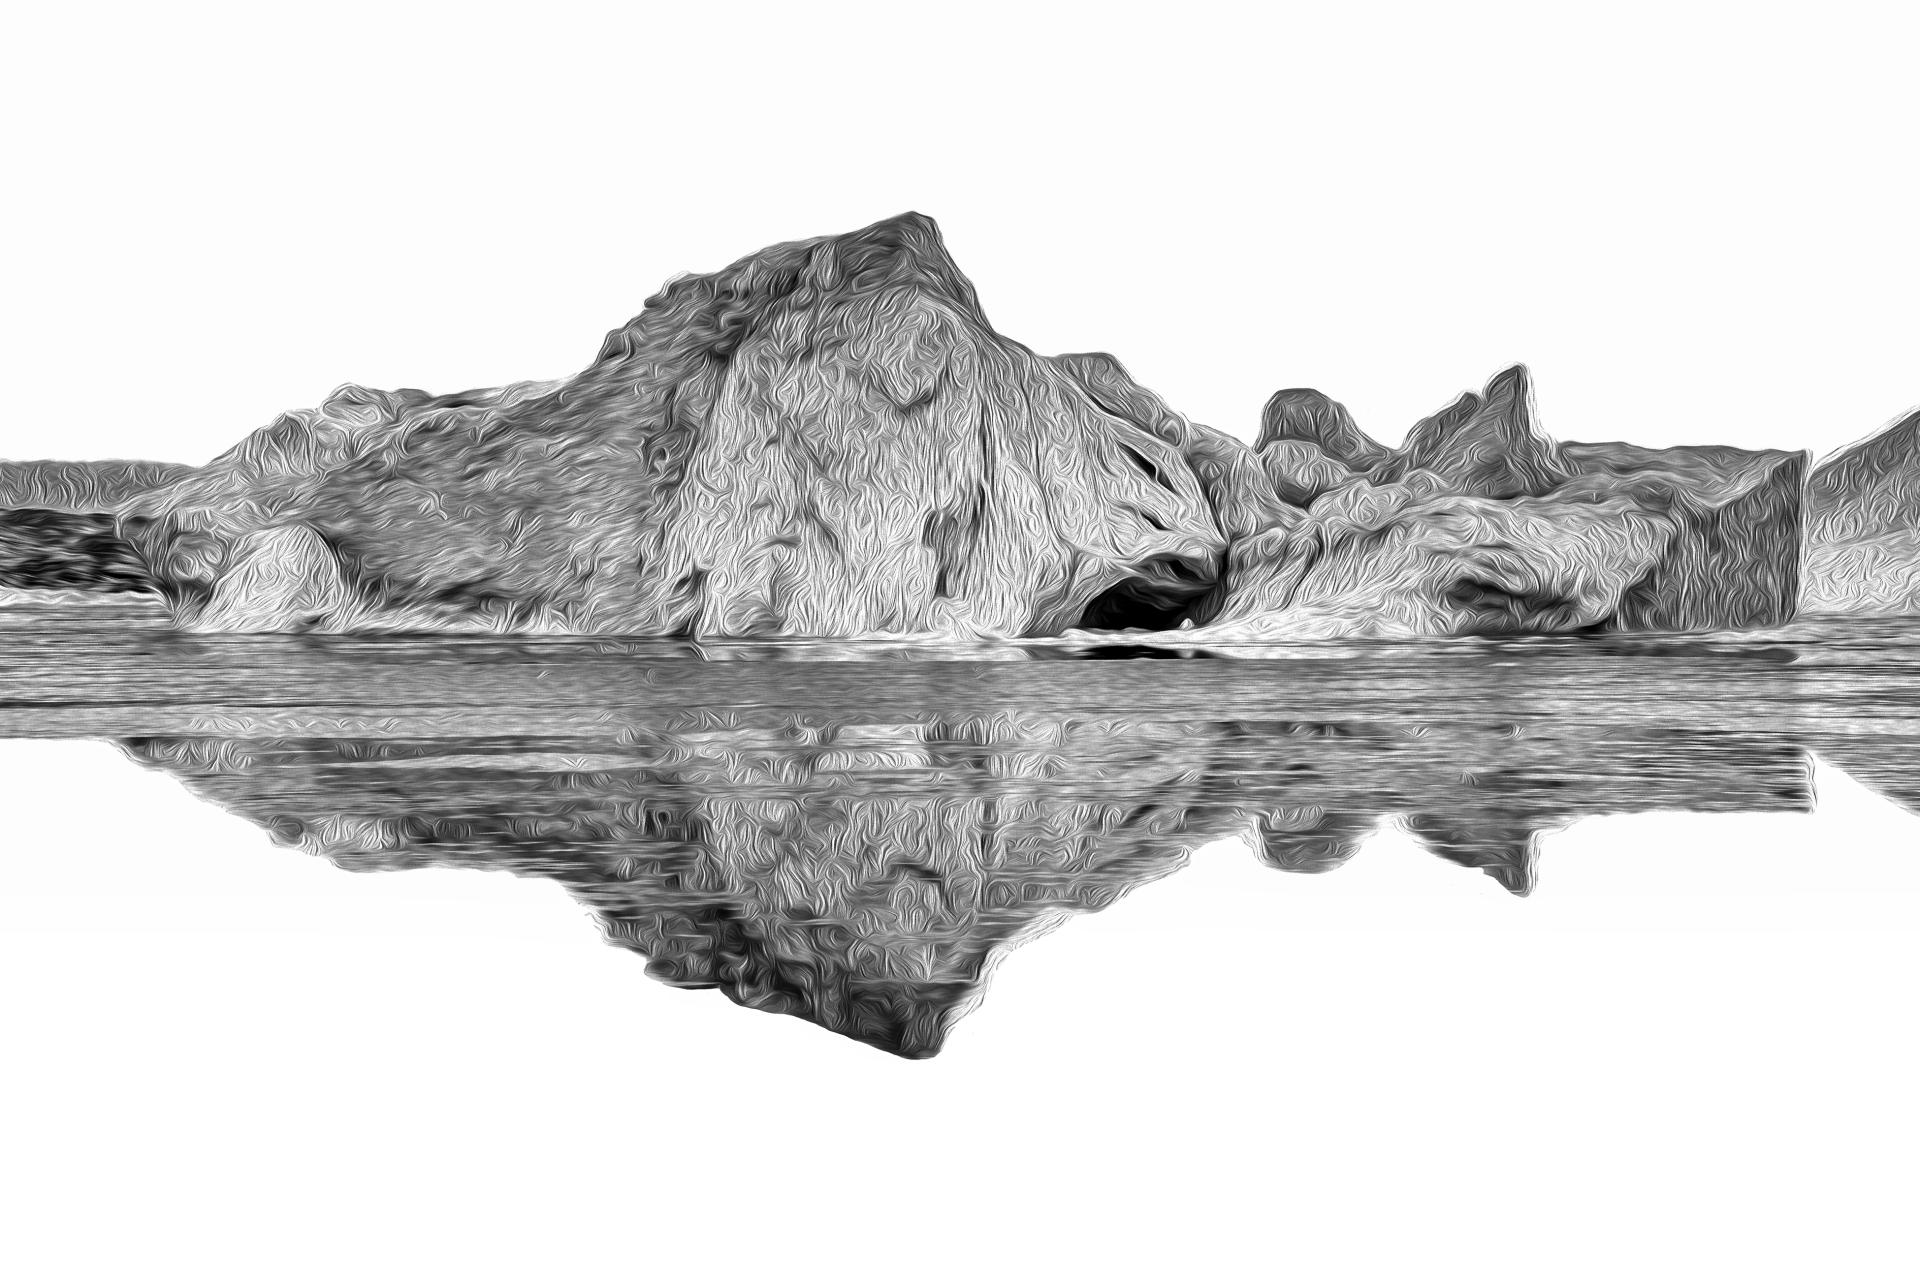 London Photography Awards Winner - The Art of Iceberg